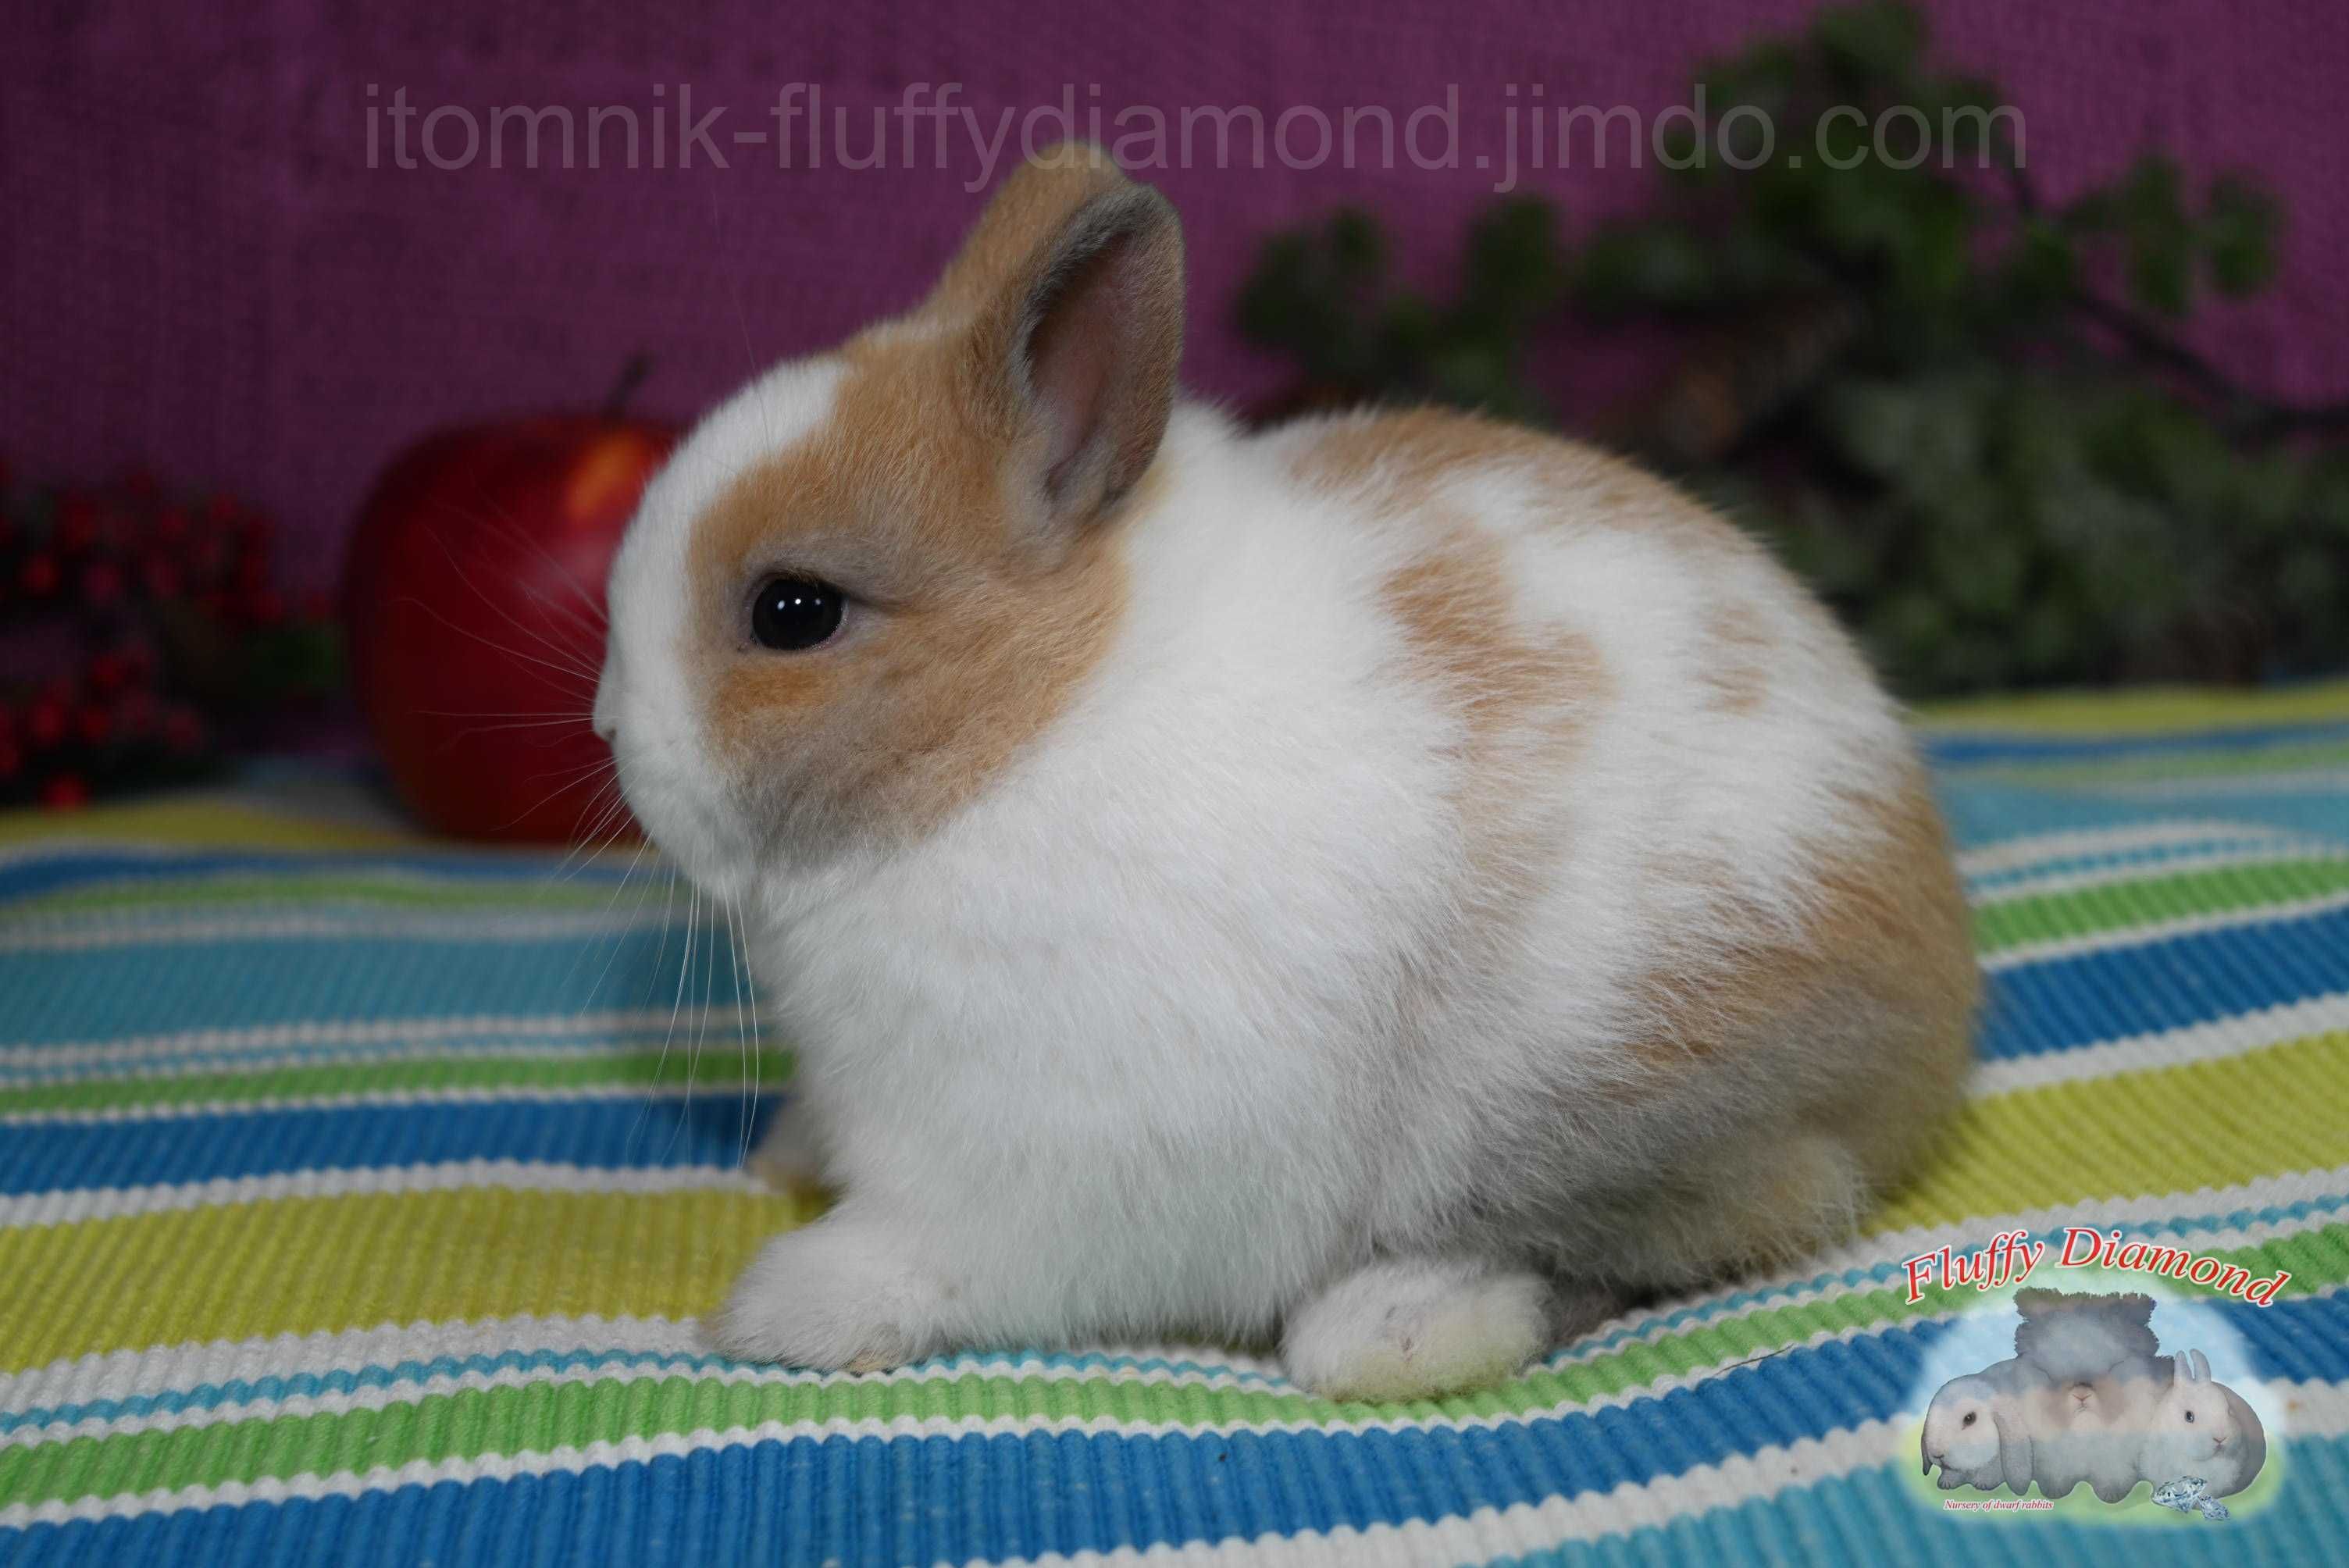 Нидерландский карлик. Кролик из питомника "Fluffy Diamond".